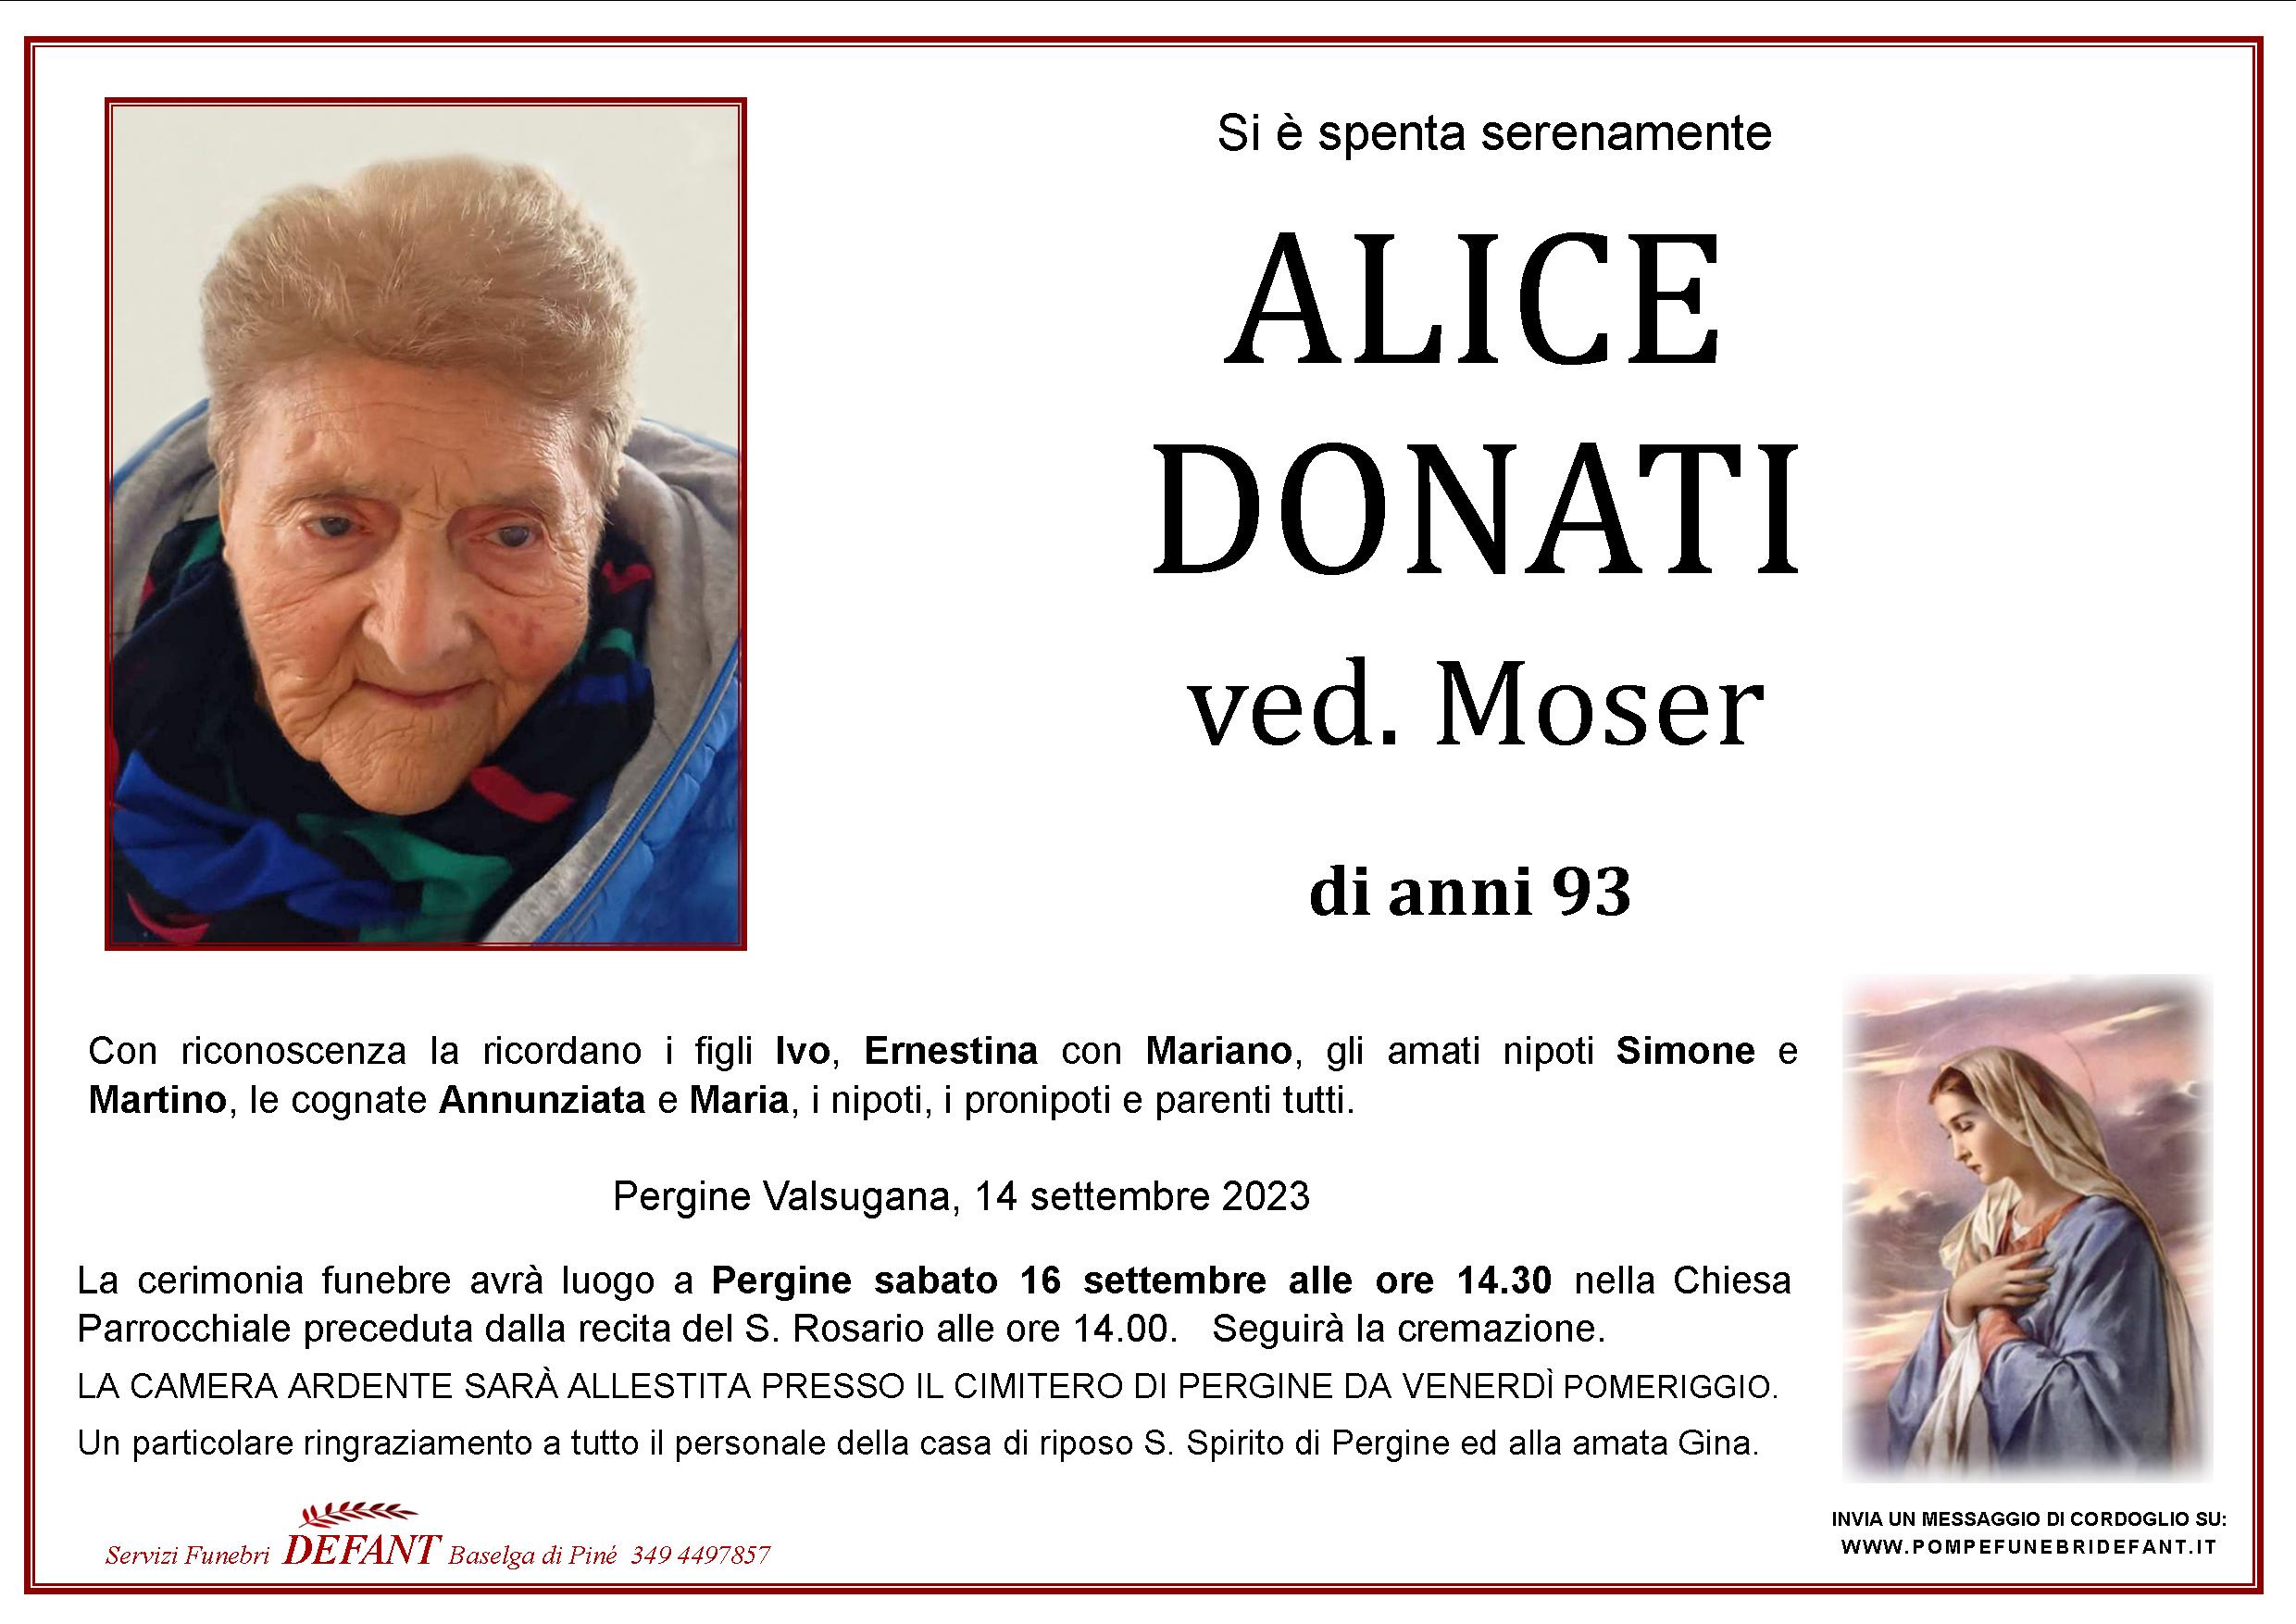 Alice Donati